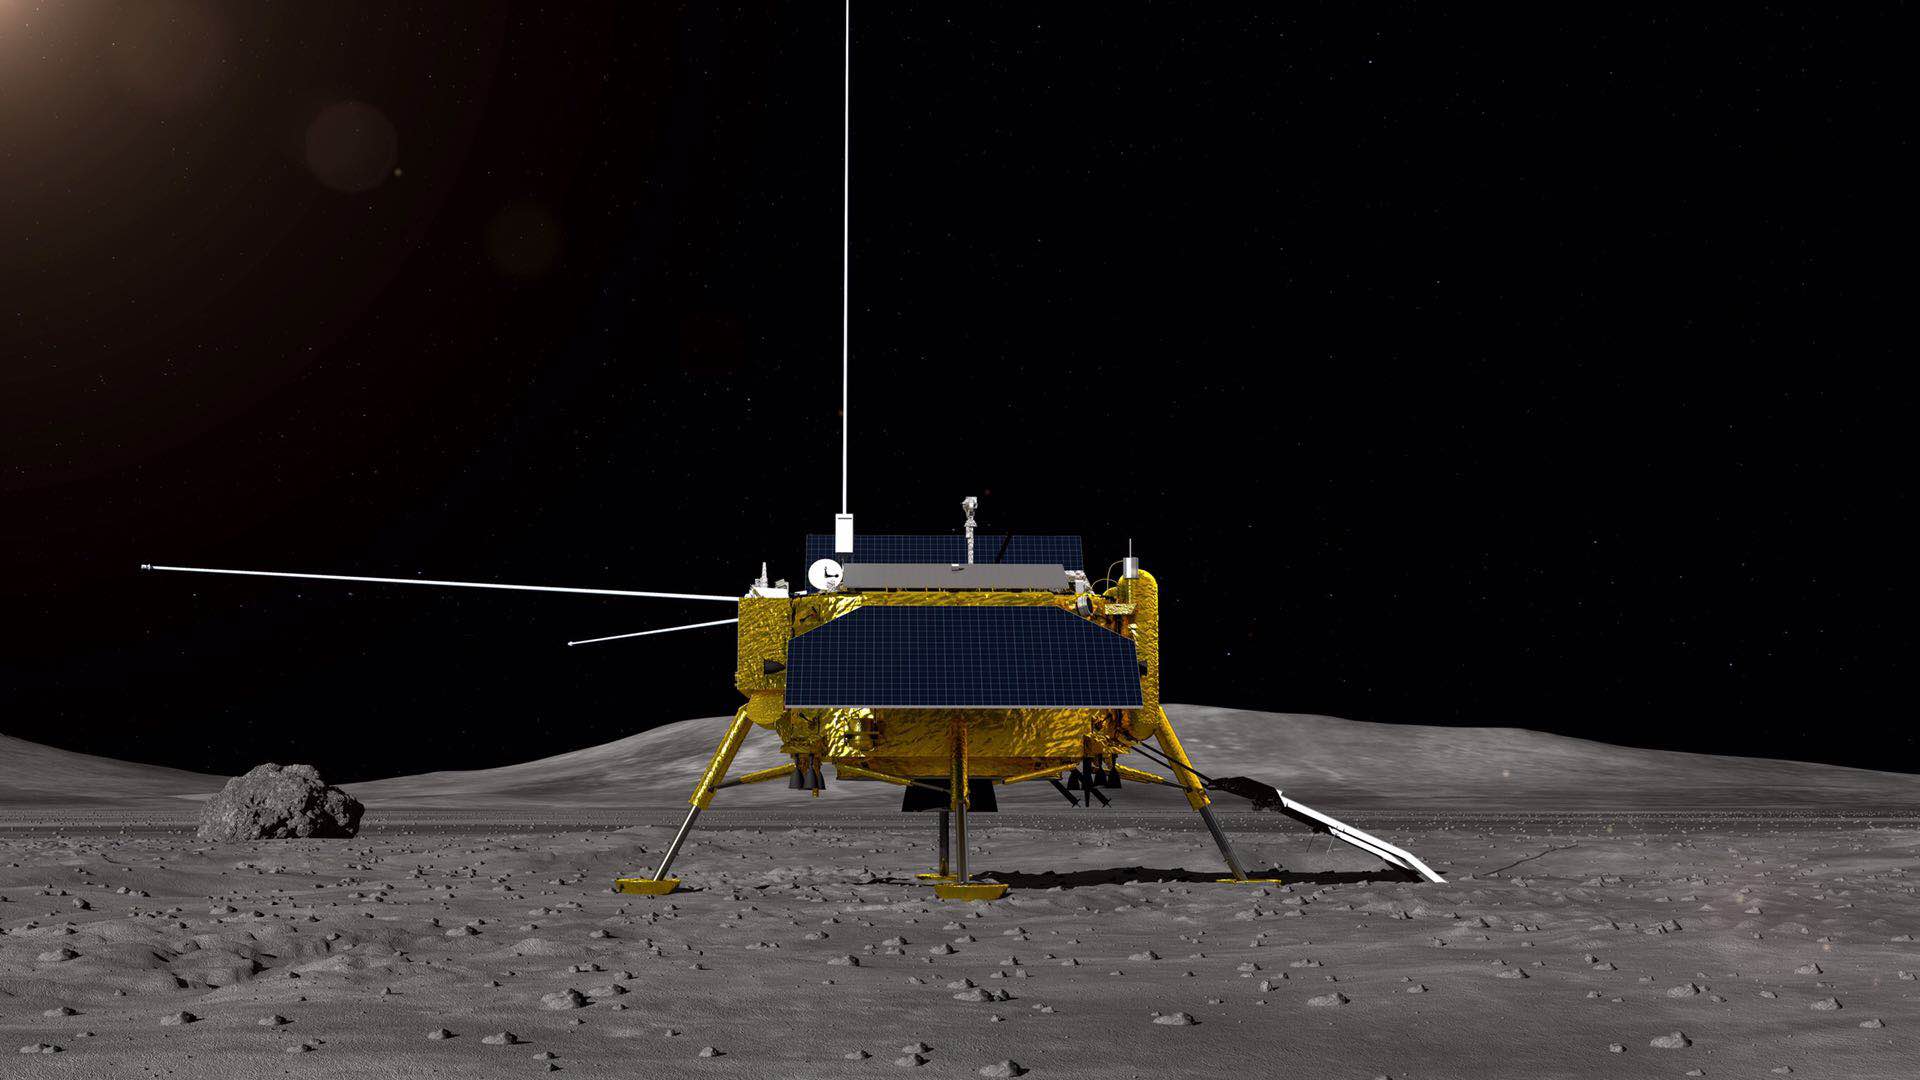 嫦娥四号任务月球车全球征名启动!快来发挥你